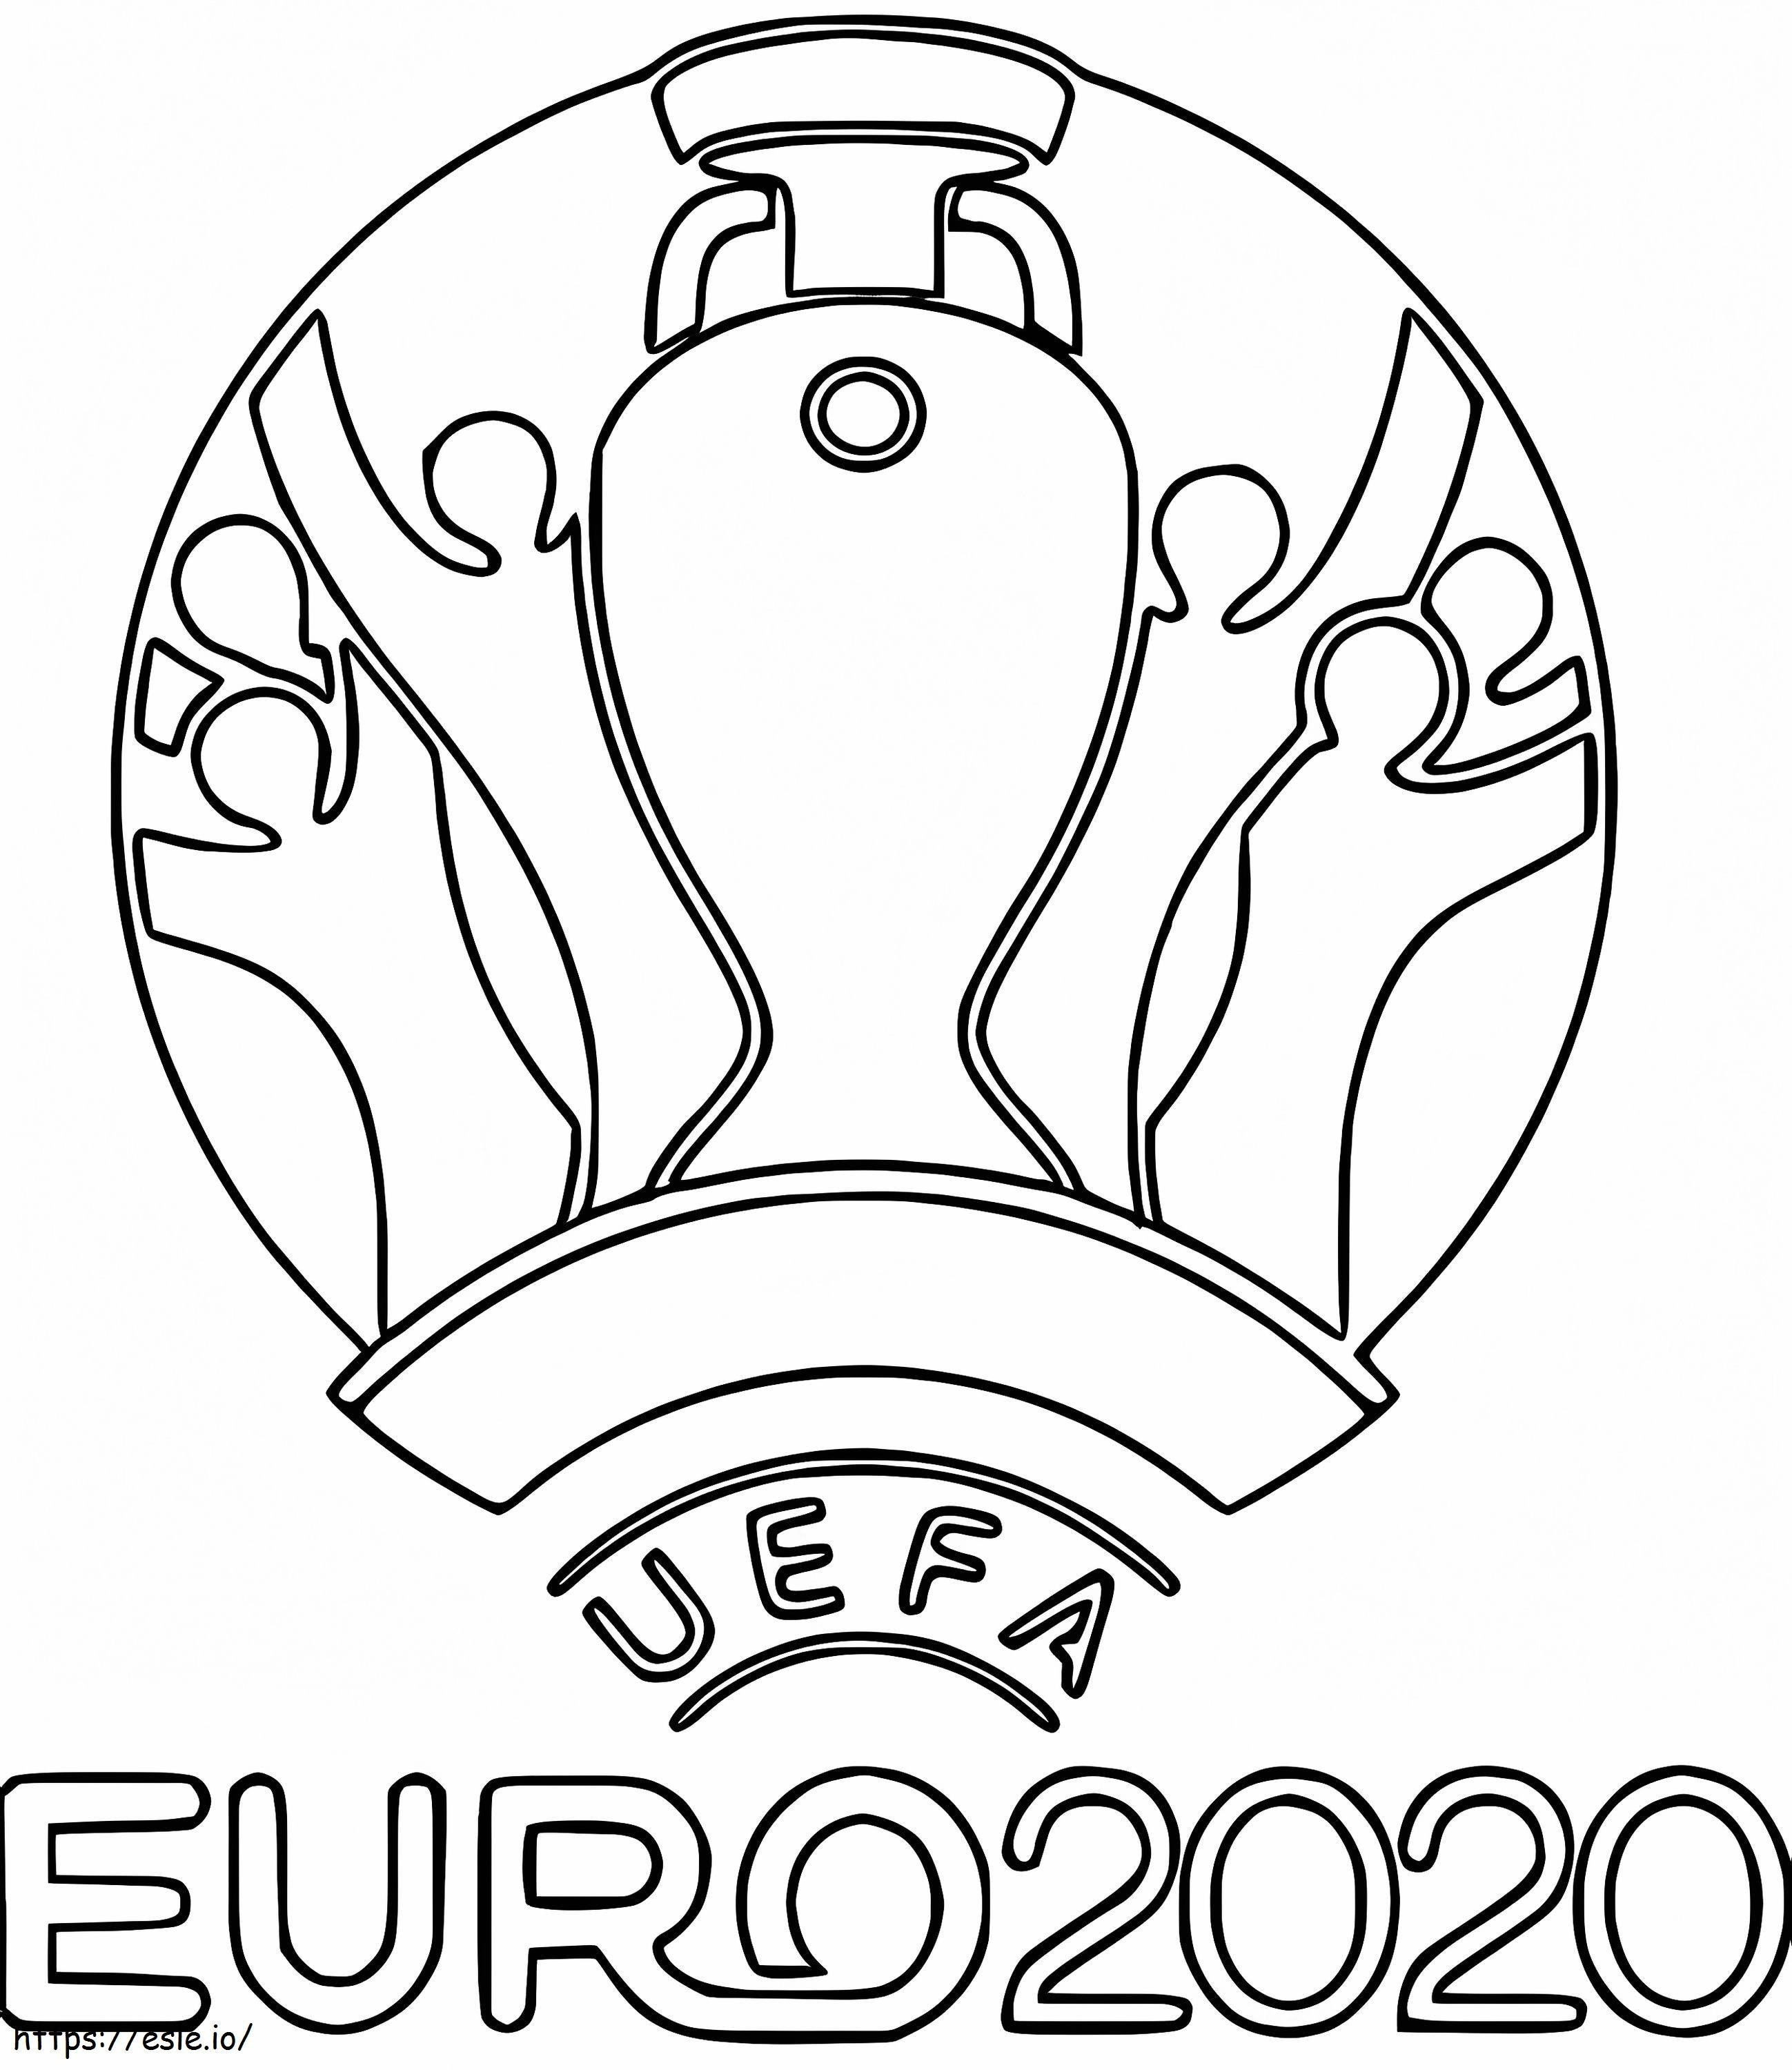 Euro 2020 2021 ausmalbilder